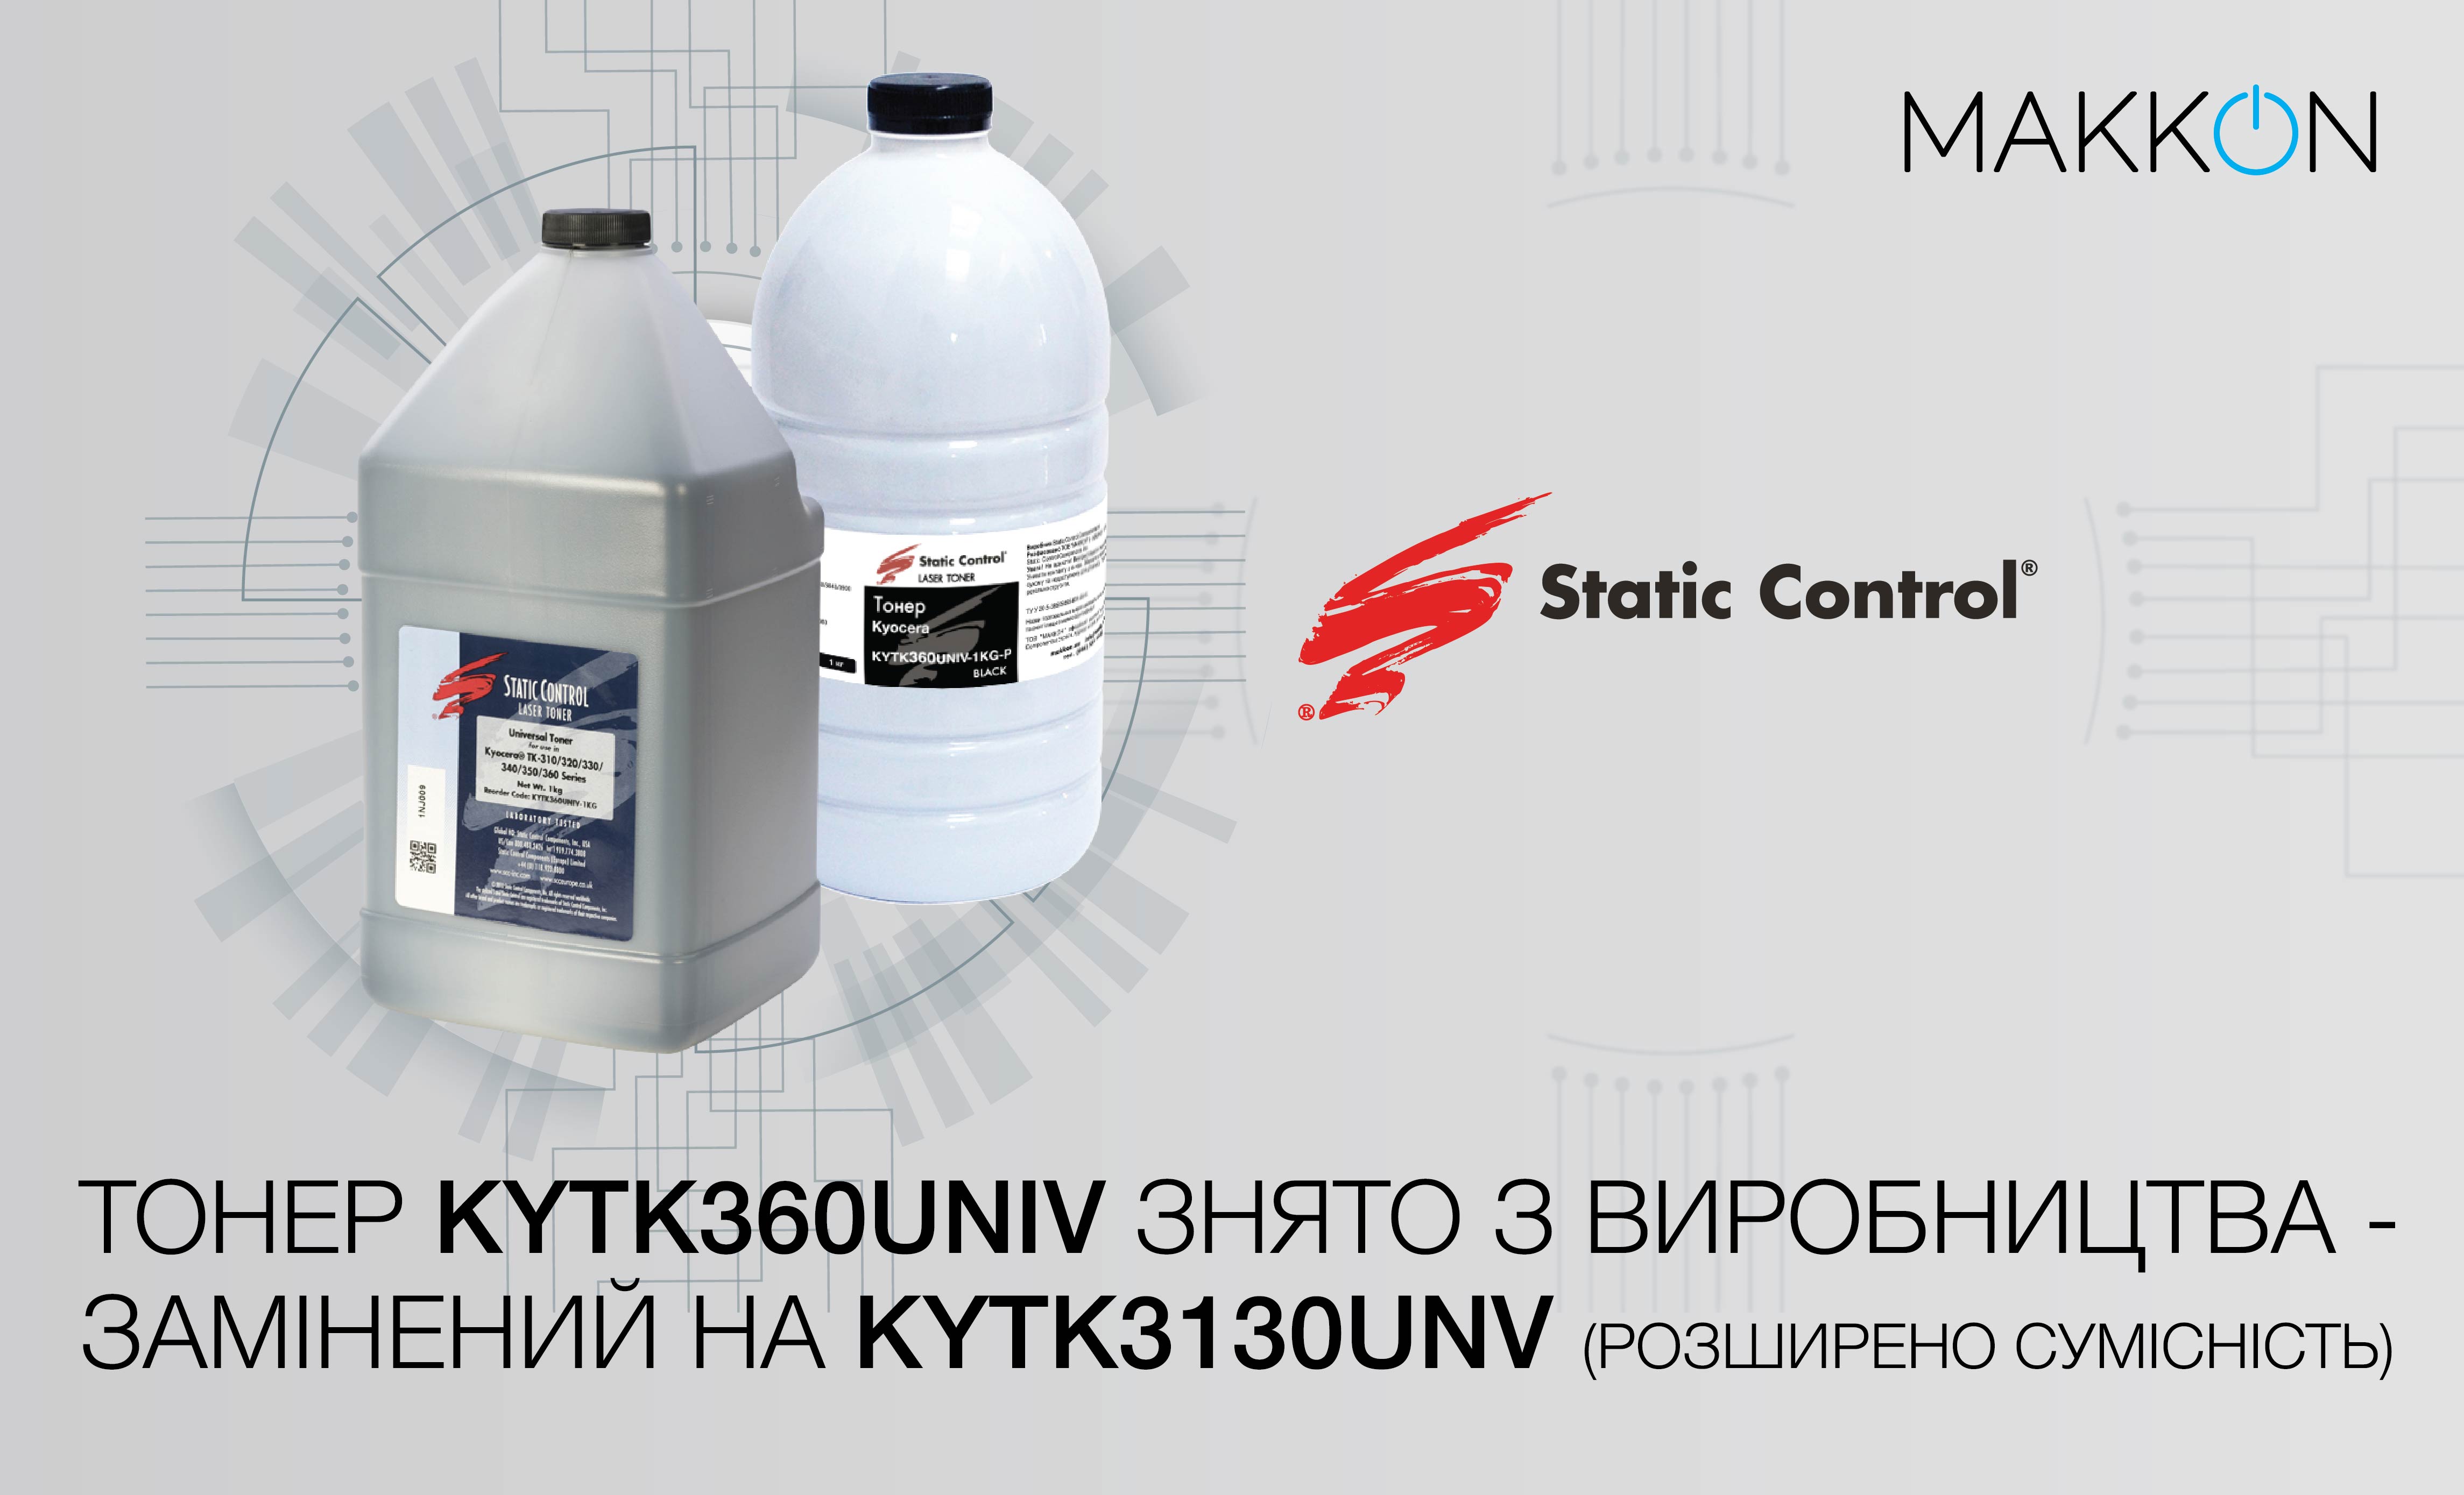 Розширено сумісність монохромного тонера KYTK3130UNV від Static Control